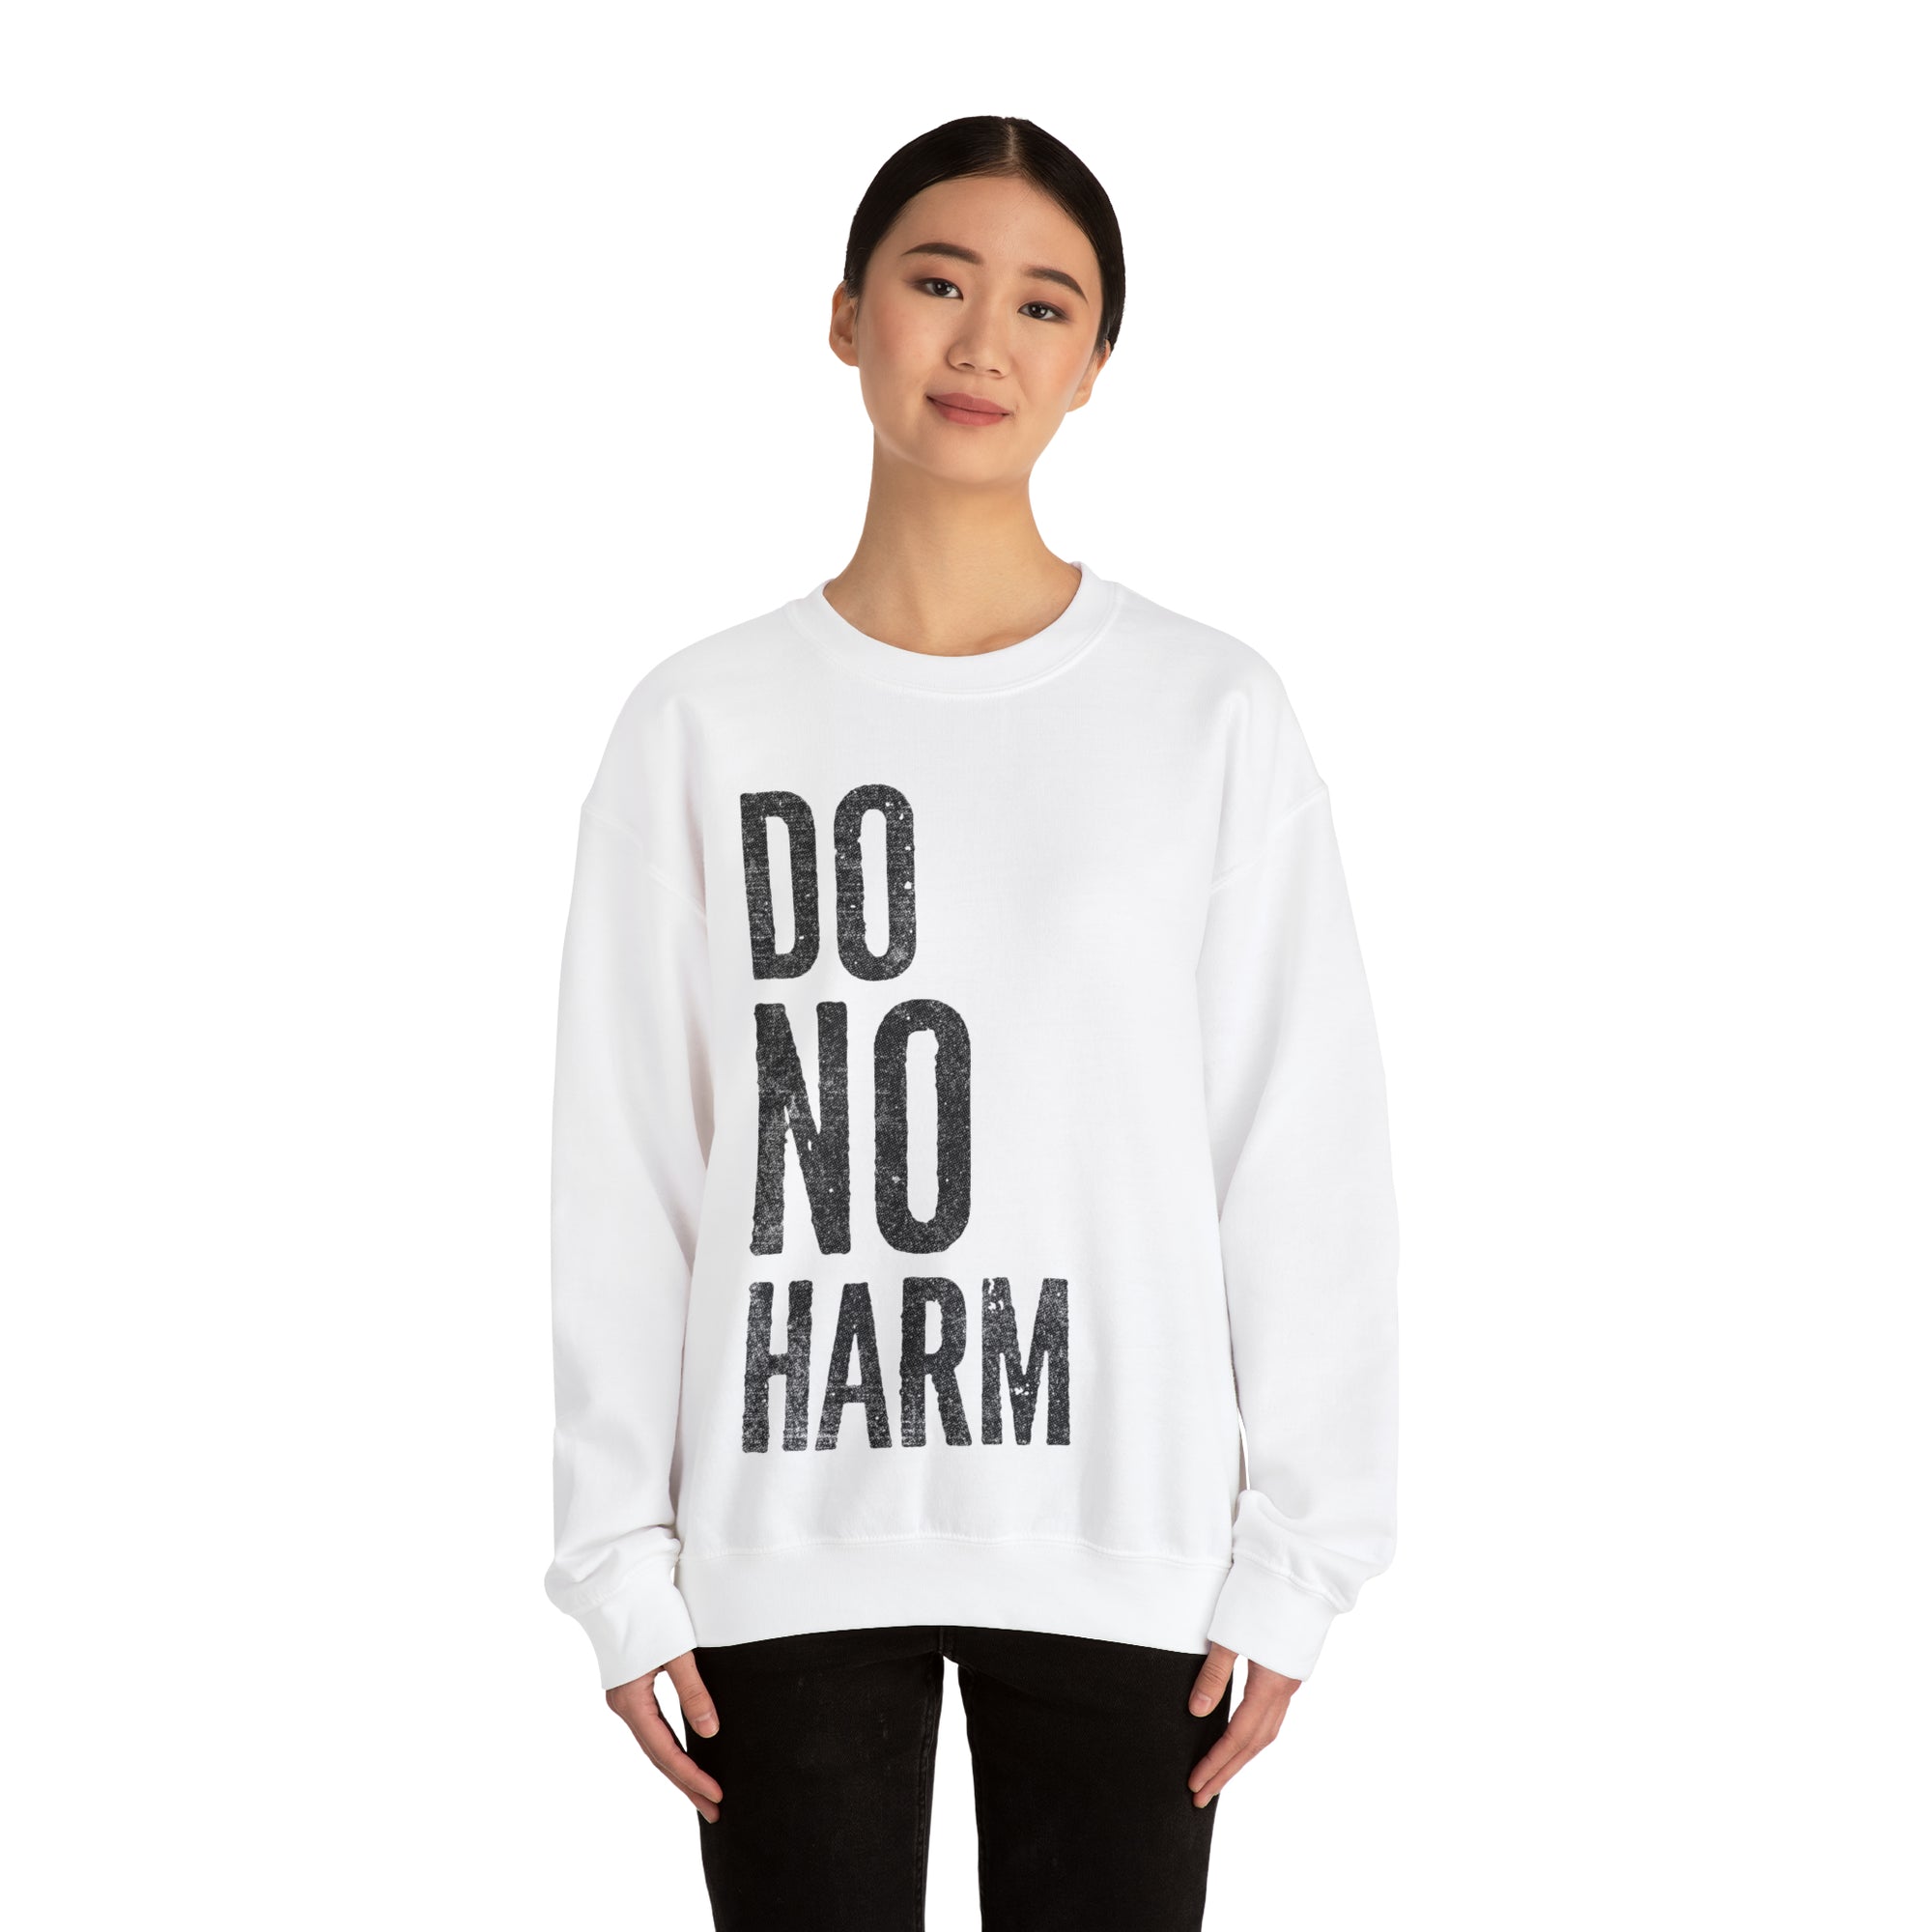 DO NO HARM Crewneck Sweatshirt